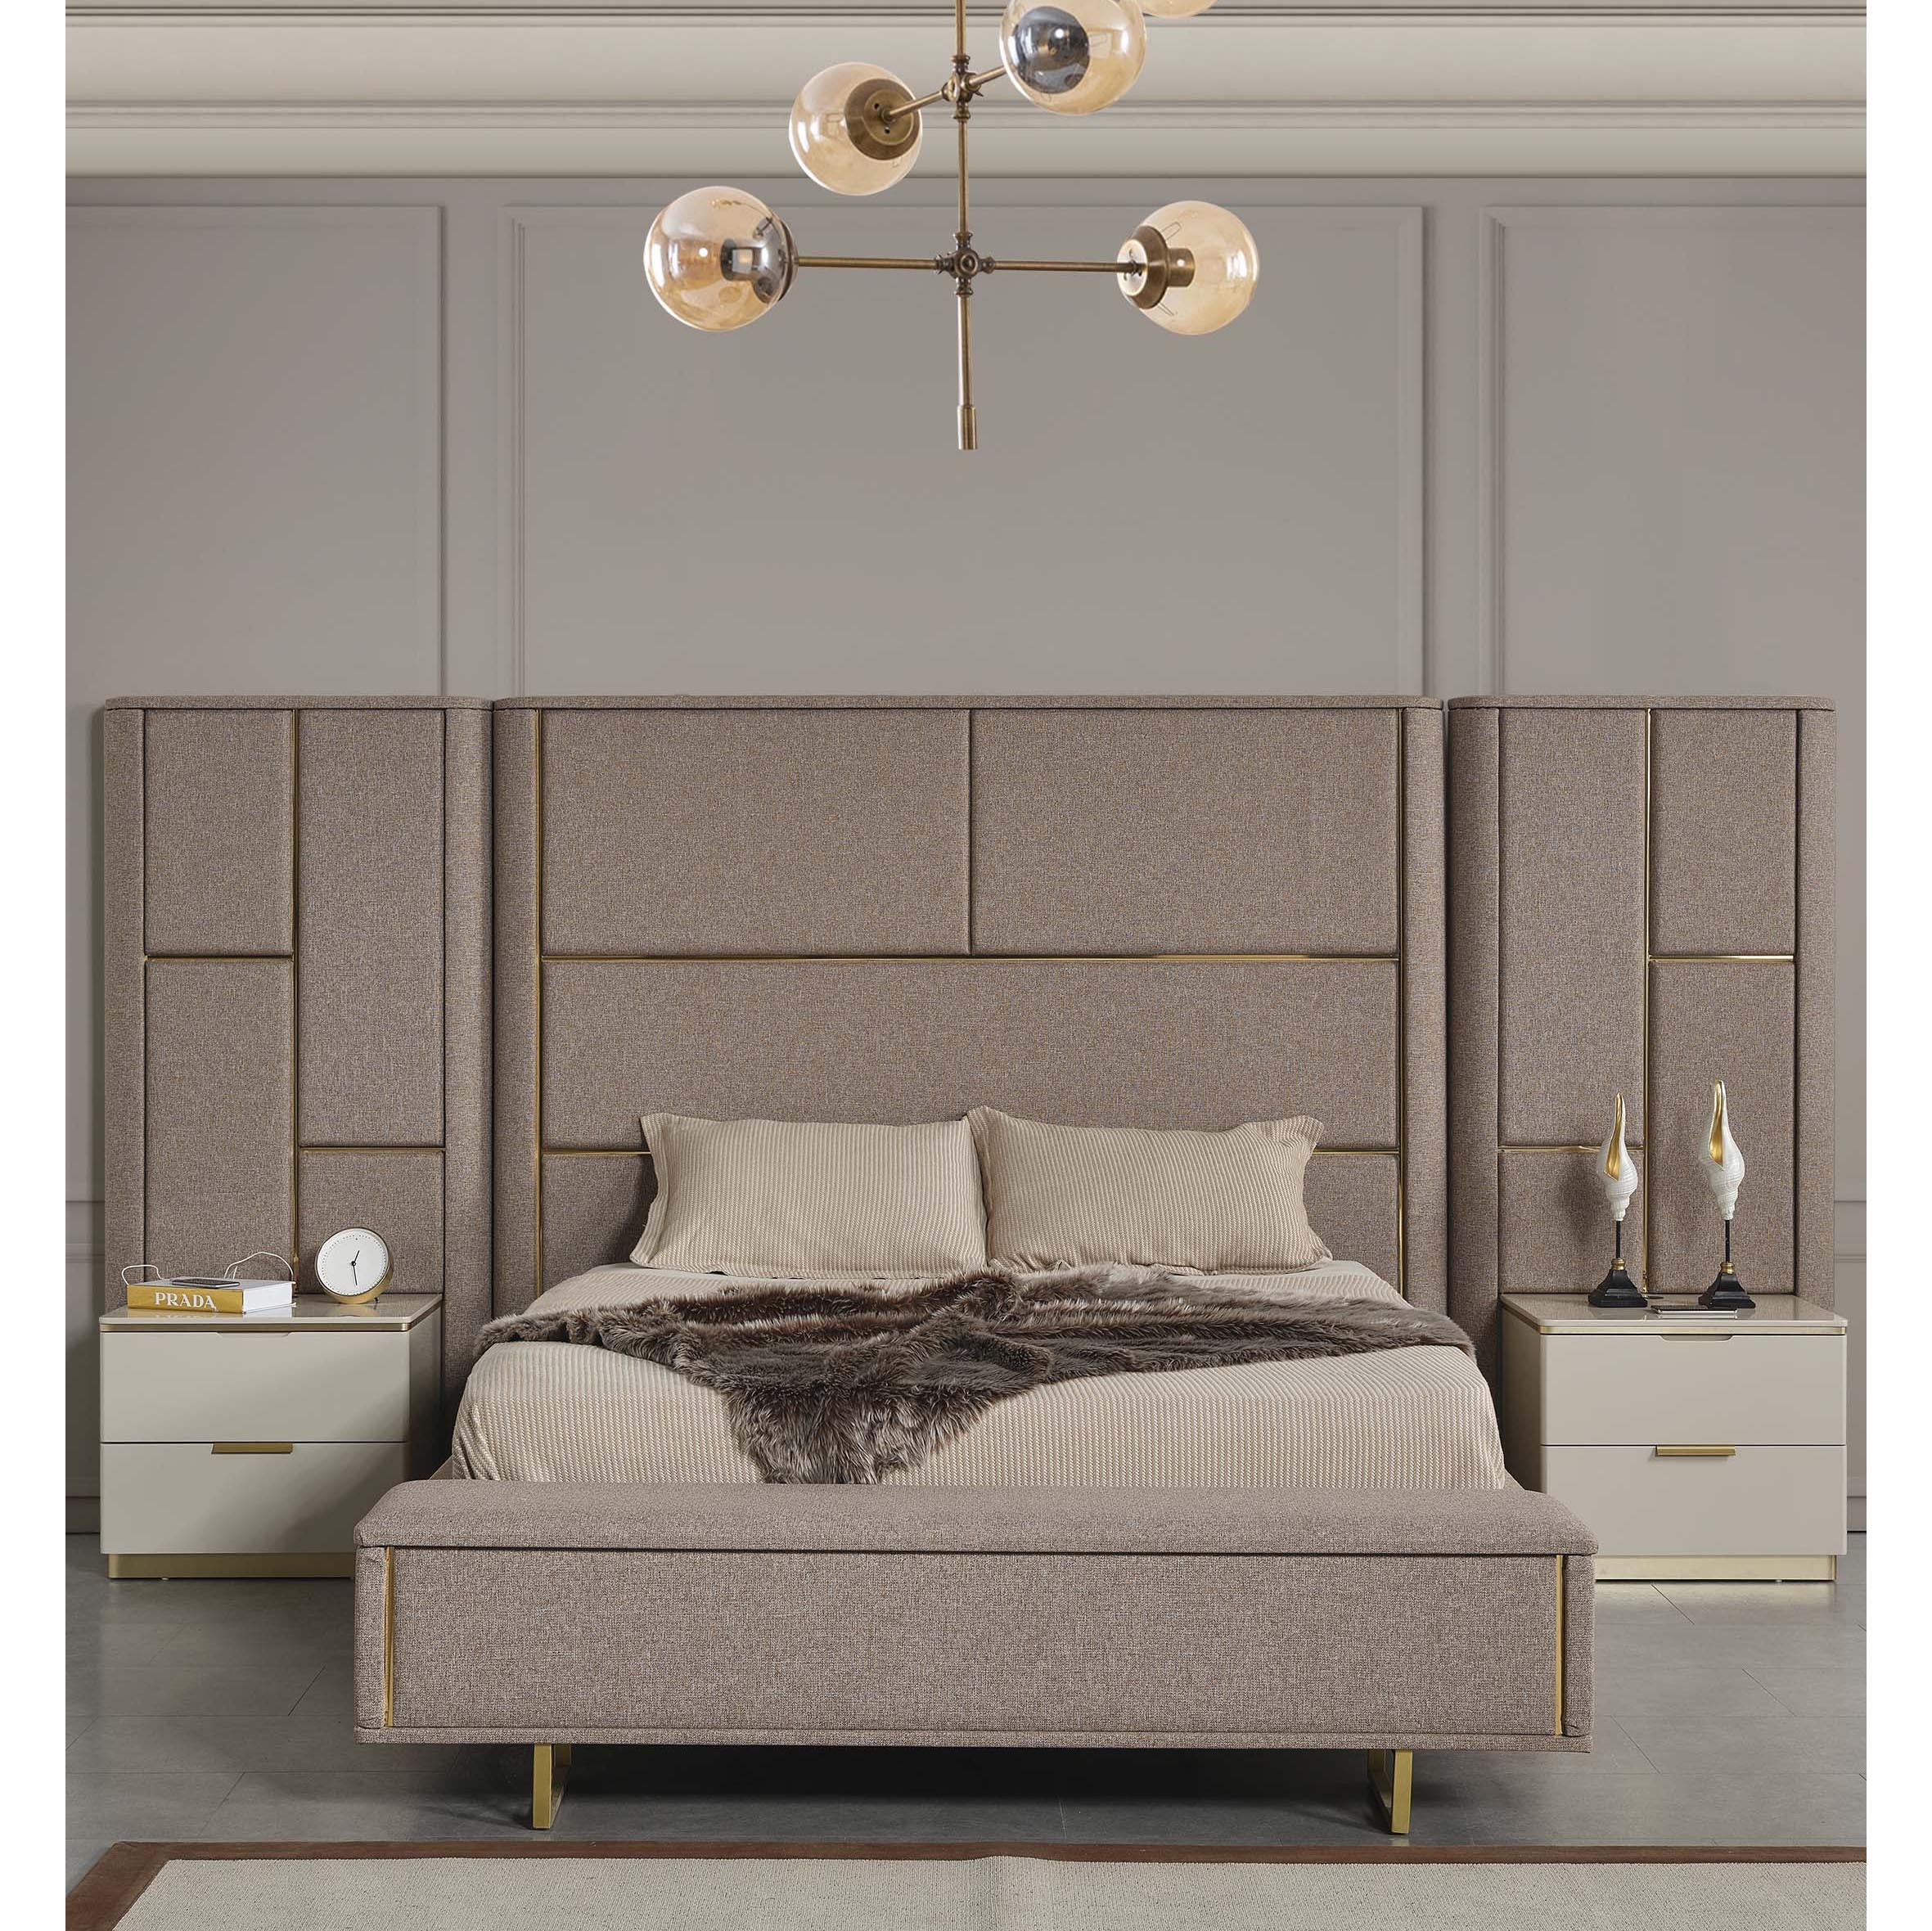 Zirve Bedroom (Bed With Storage 160x200cm)